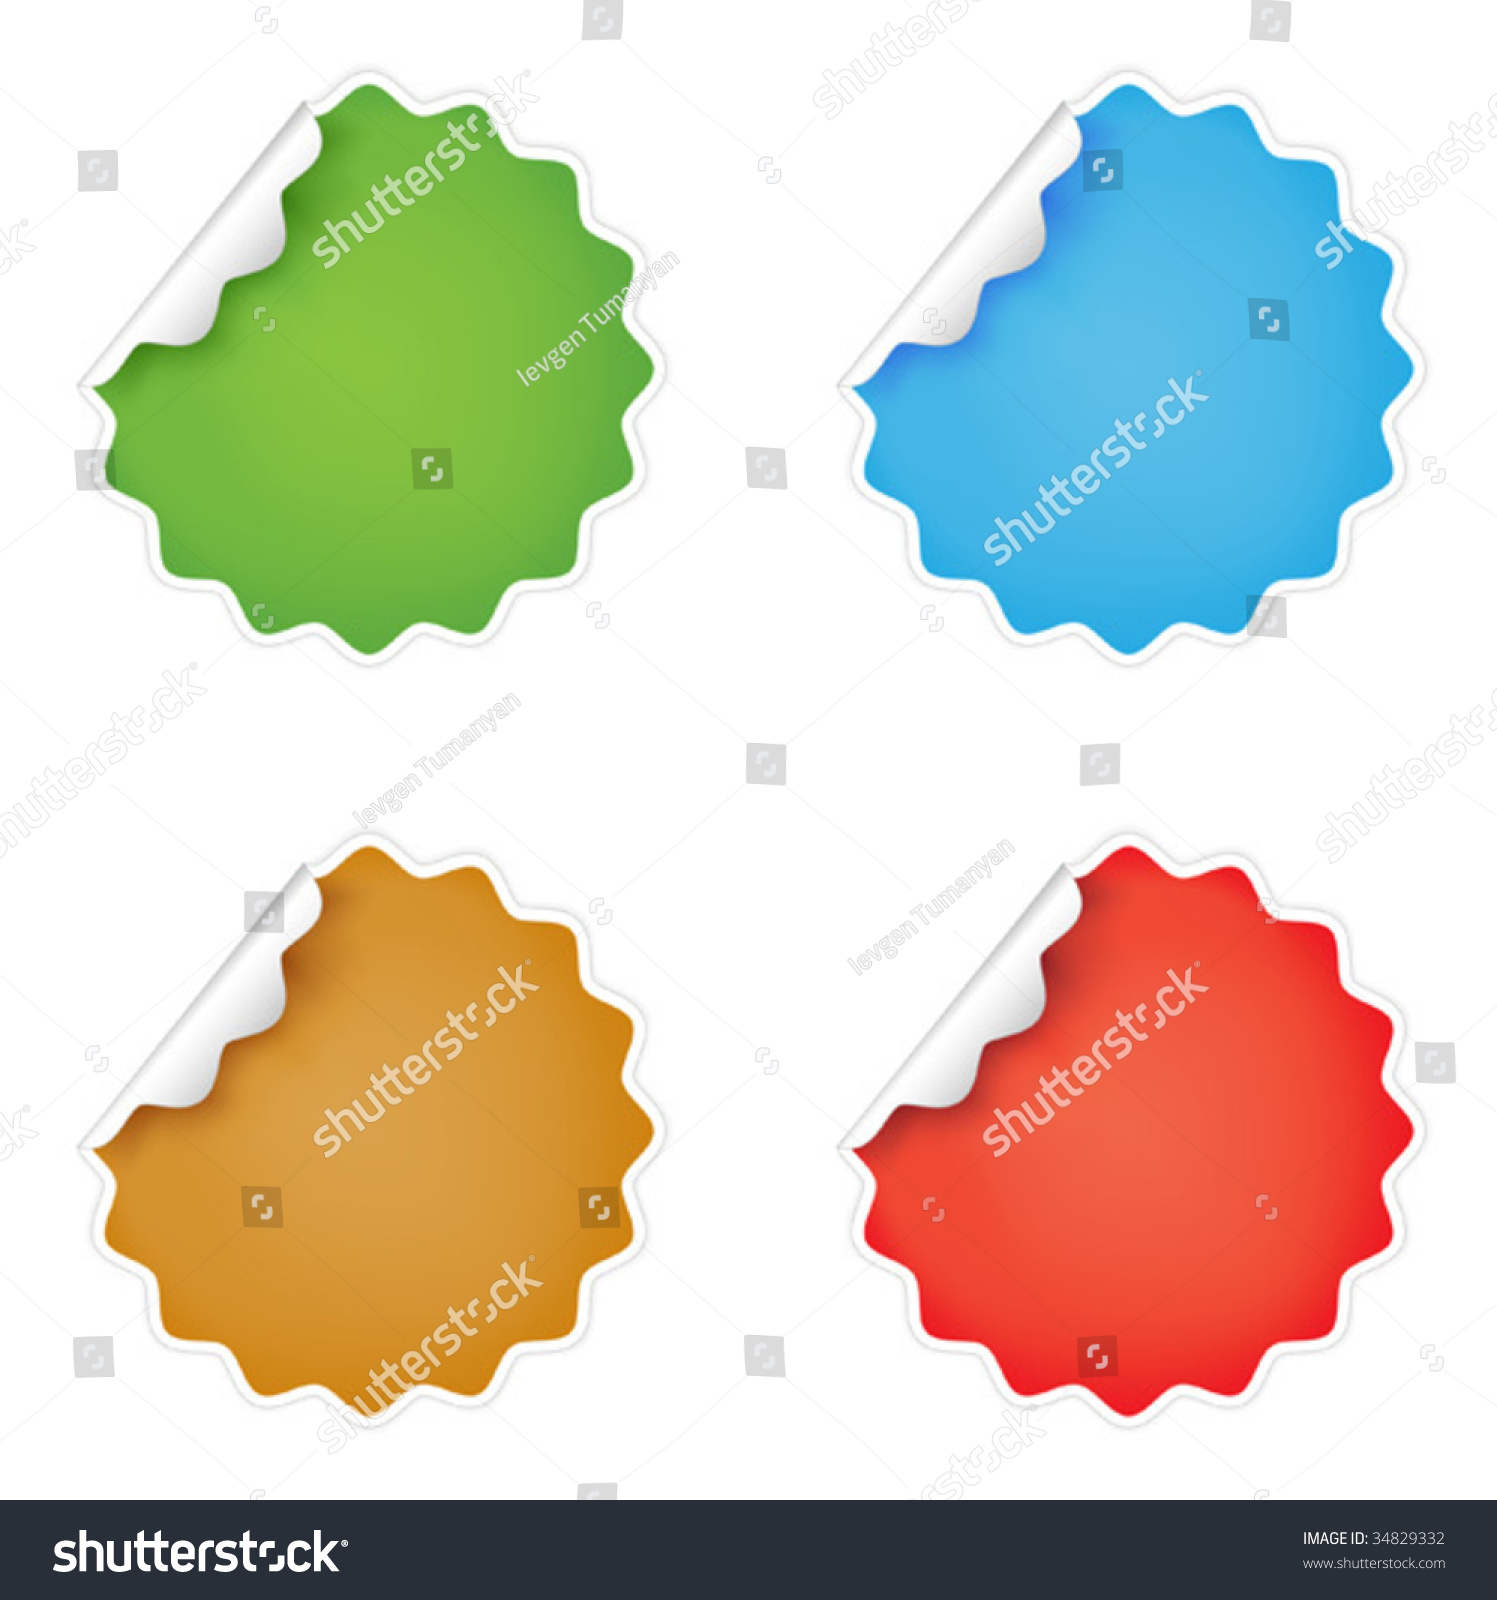 Vector Stickers - 34829332 : Shutterstock